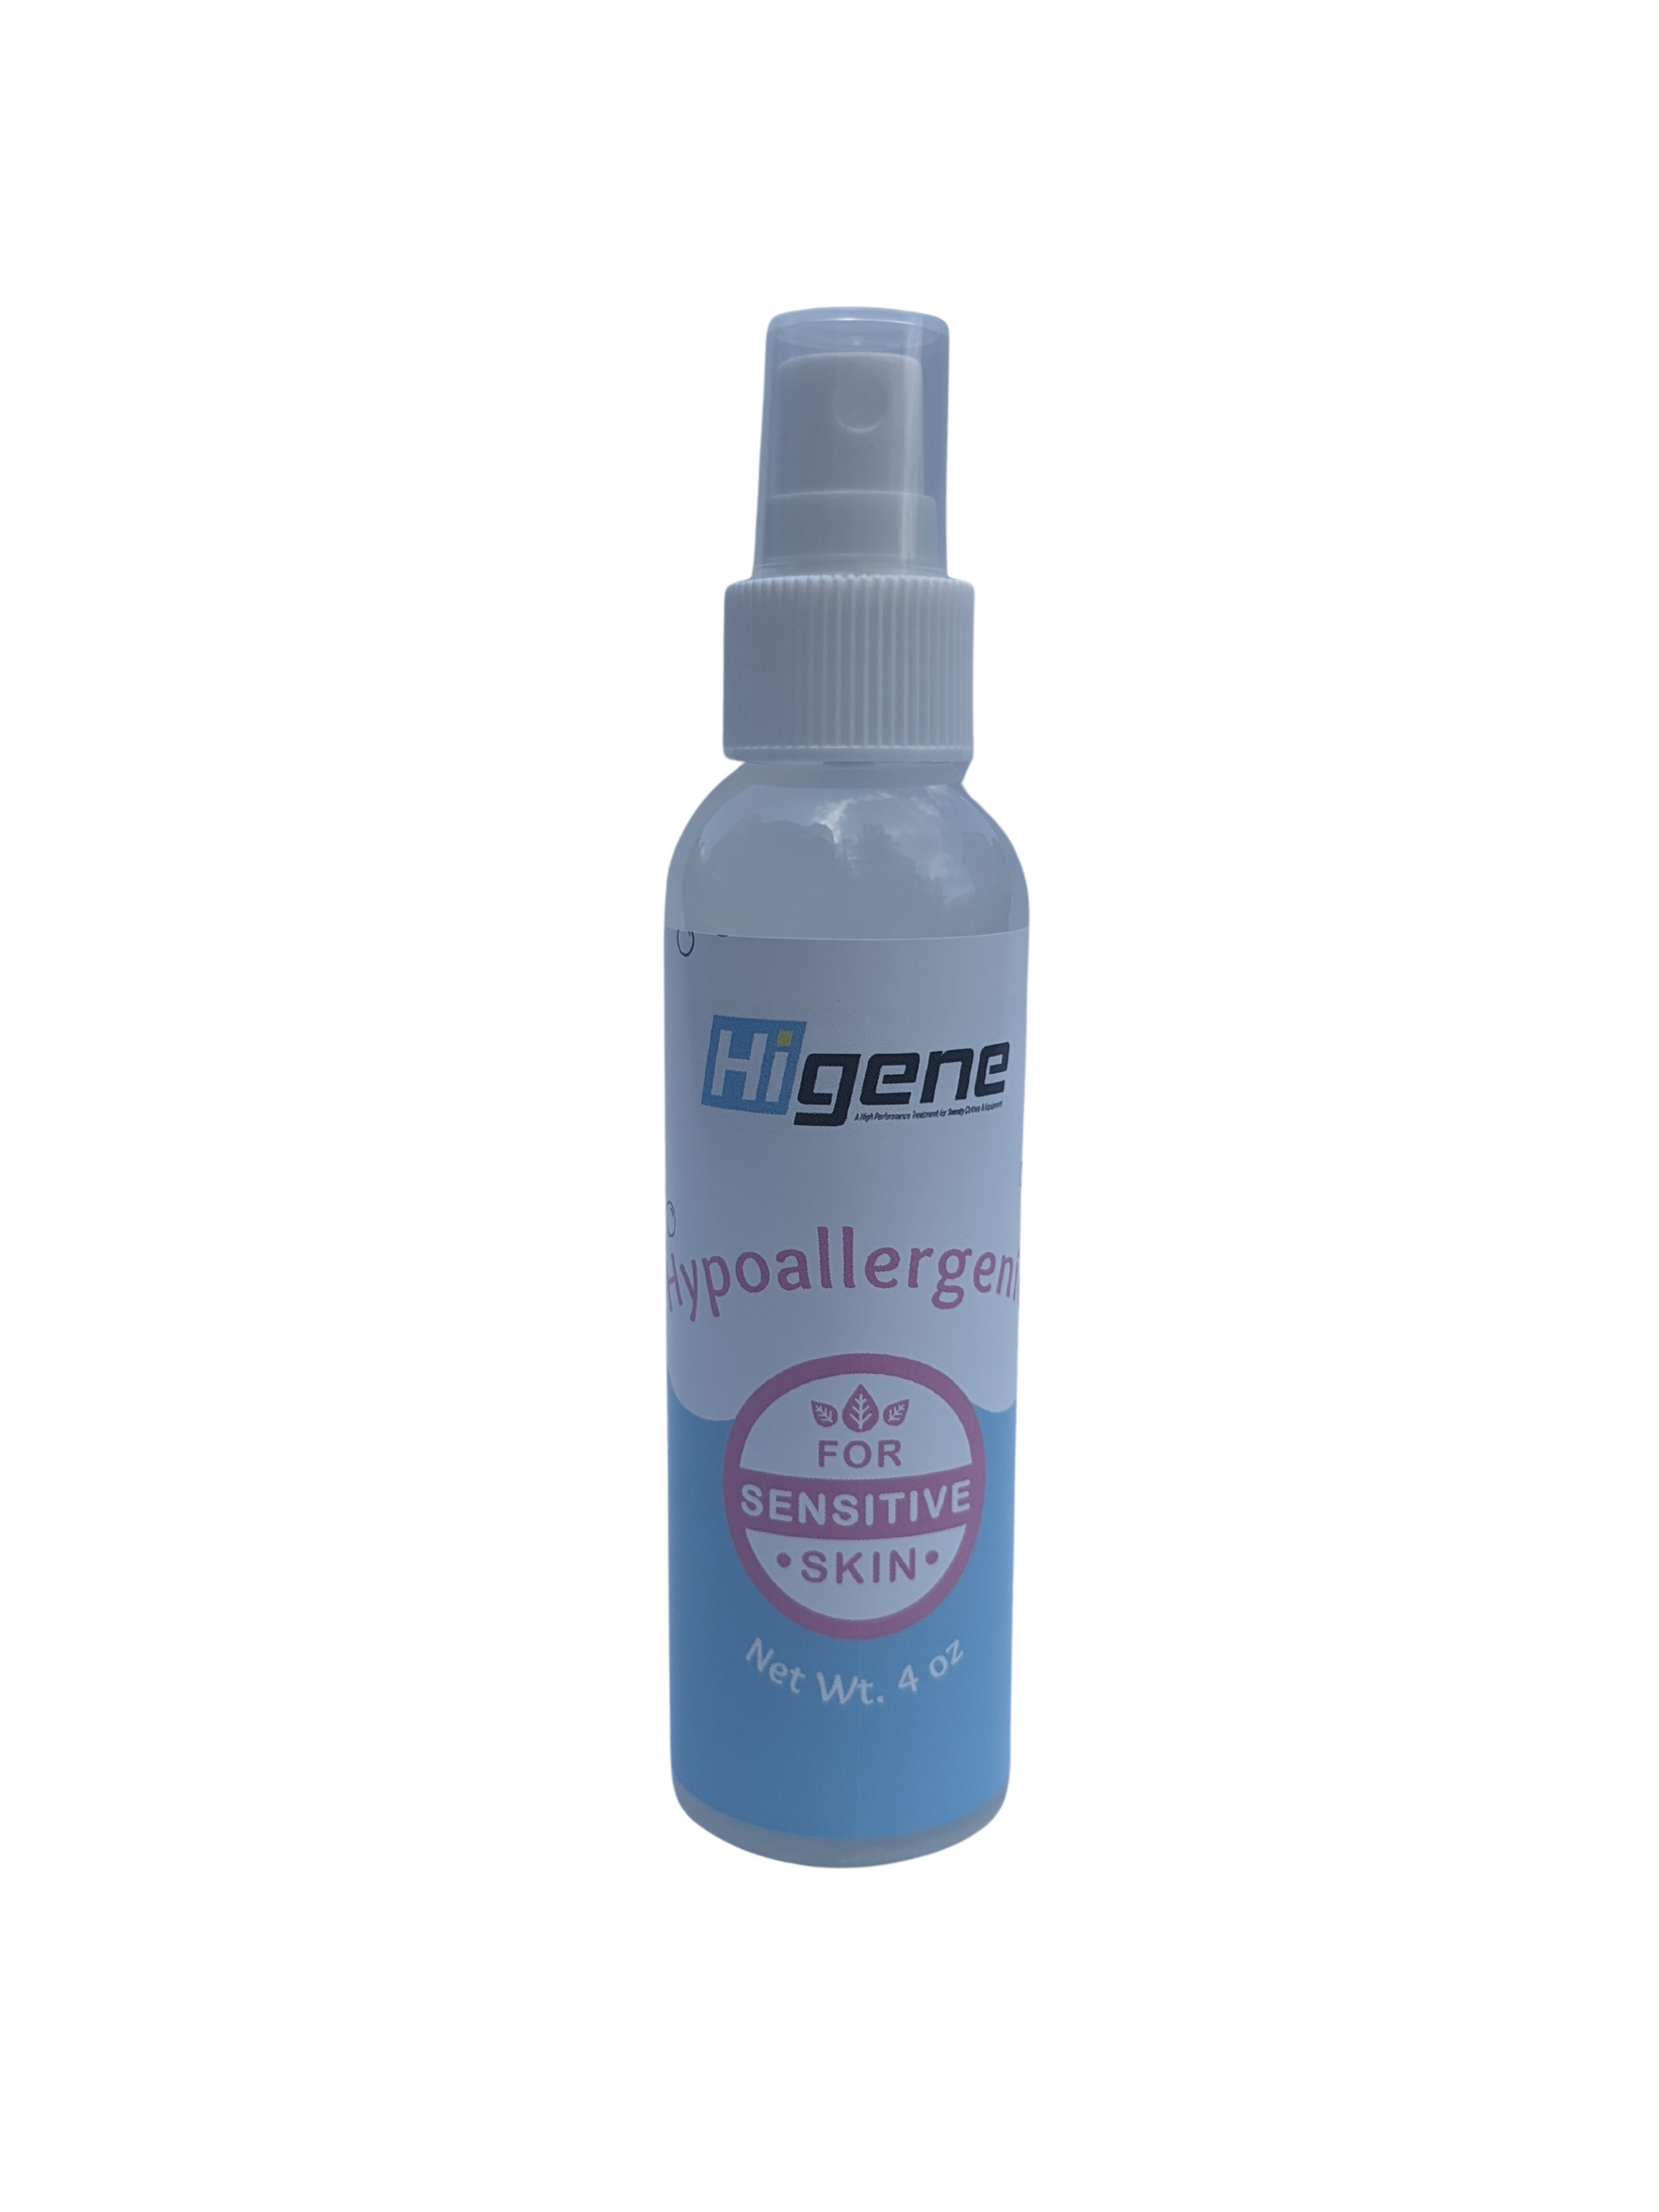 Higene - Hypoallergenic laundry spray